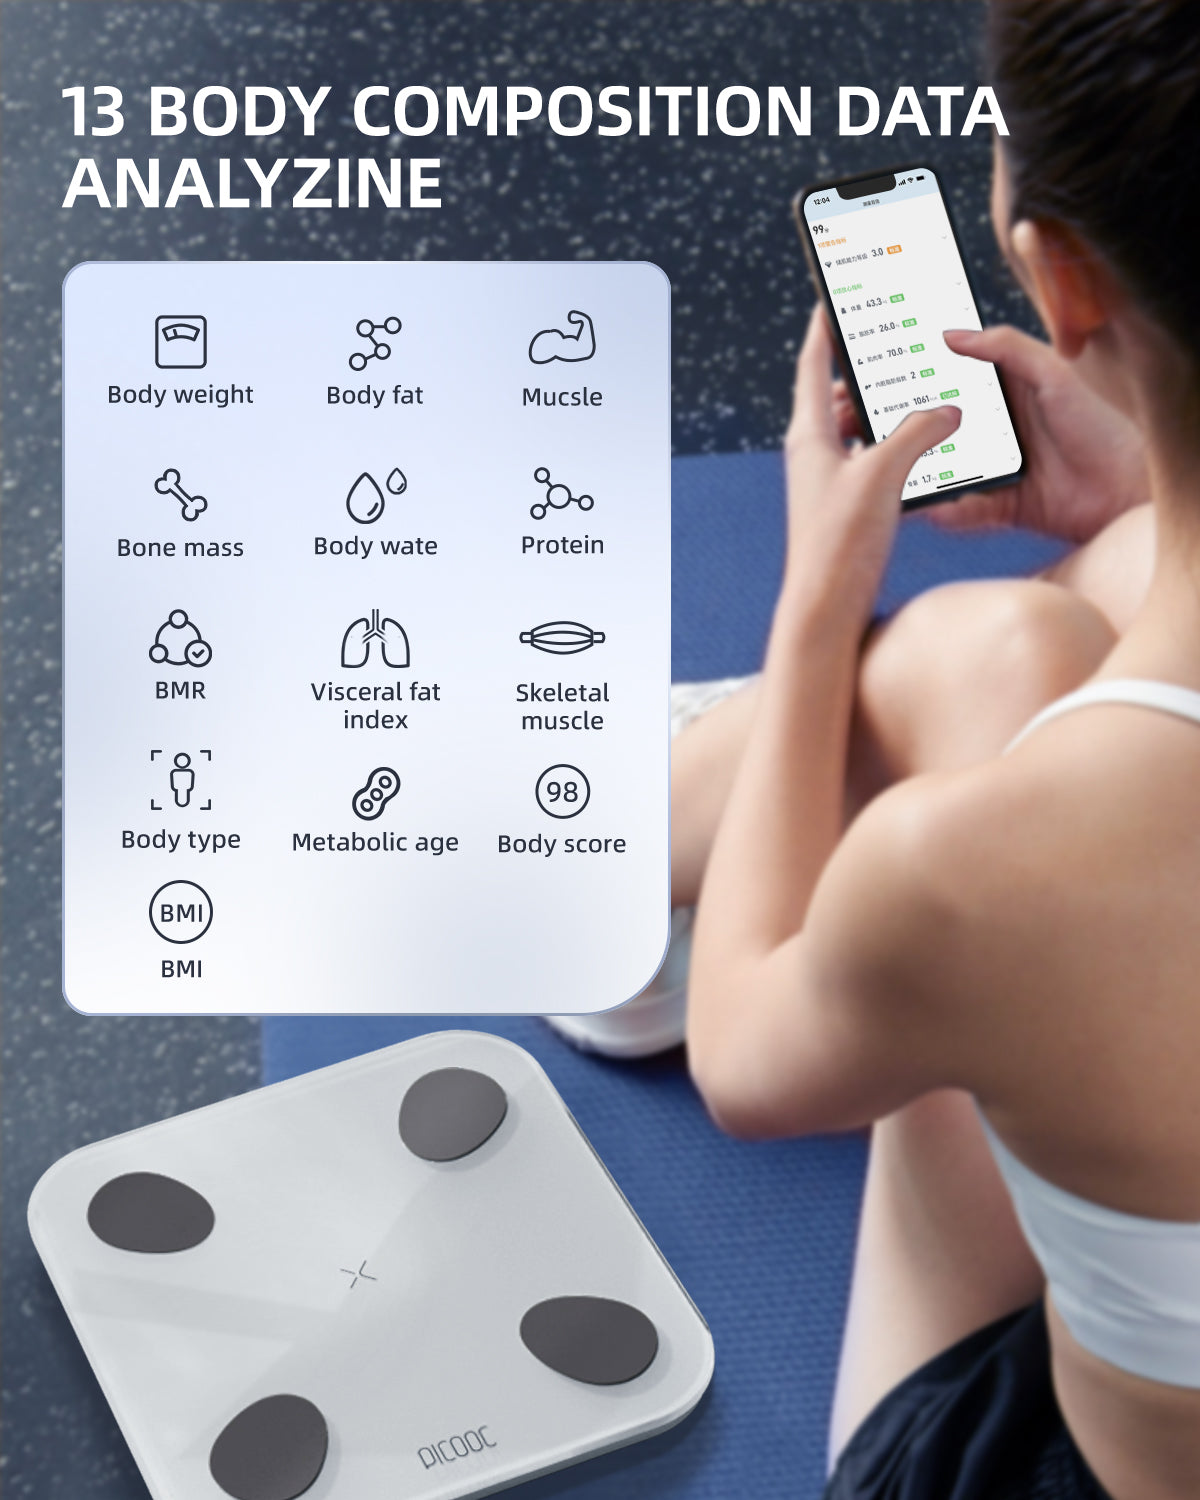 PICOOC Smart WiFi Body Fat Scale, 25 Body Composition Analyzer